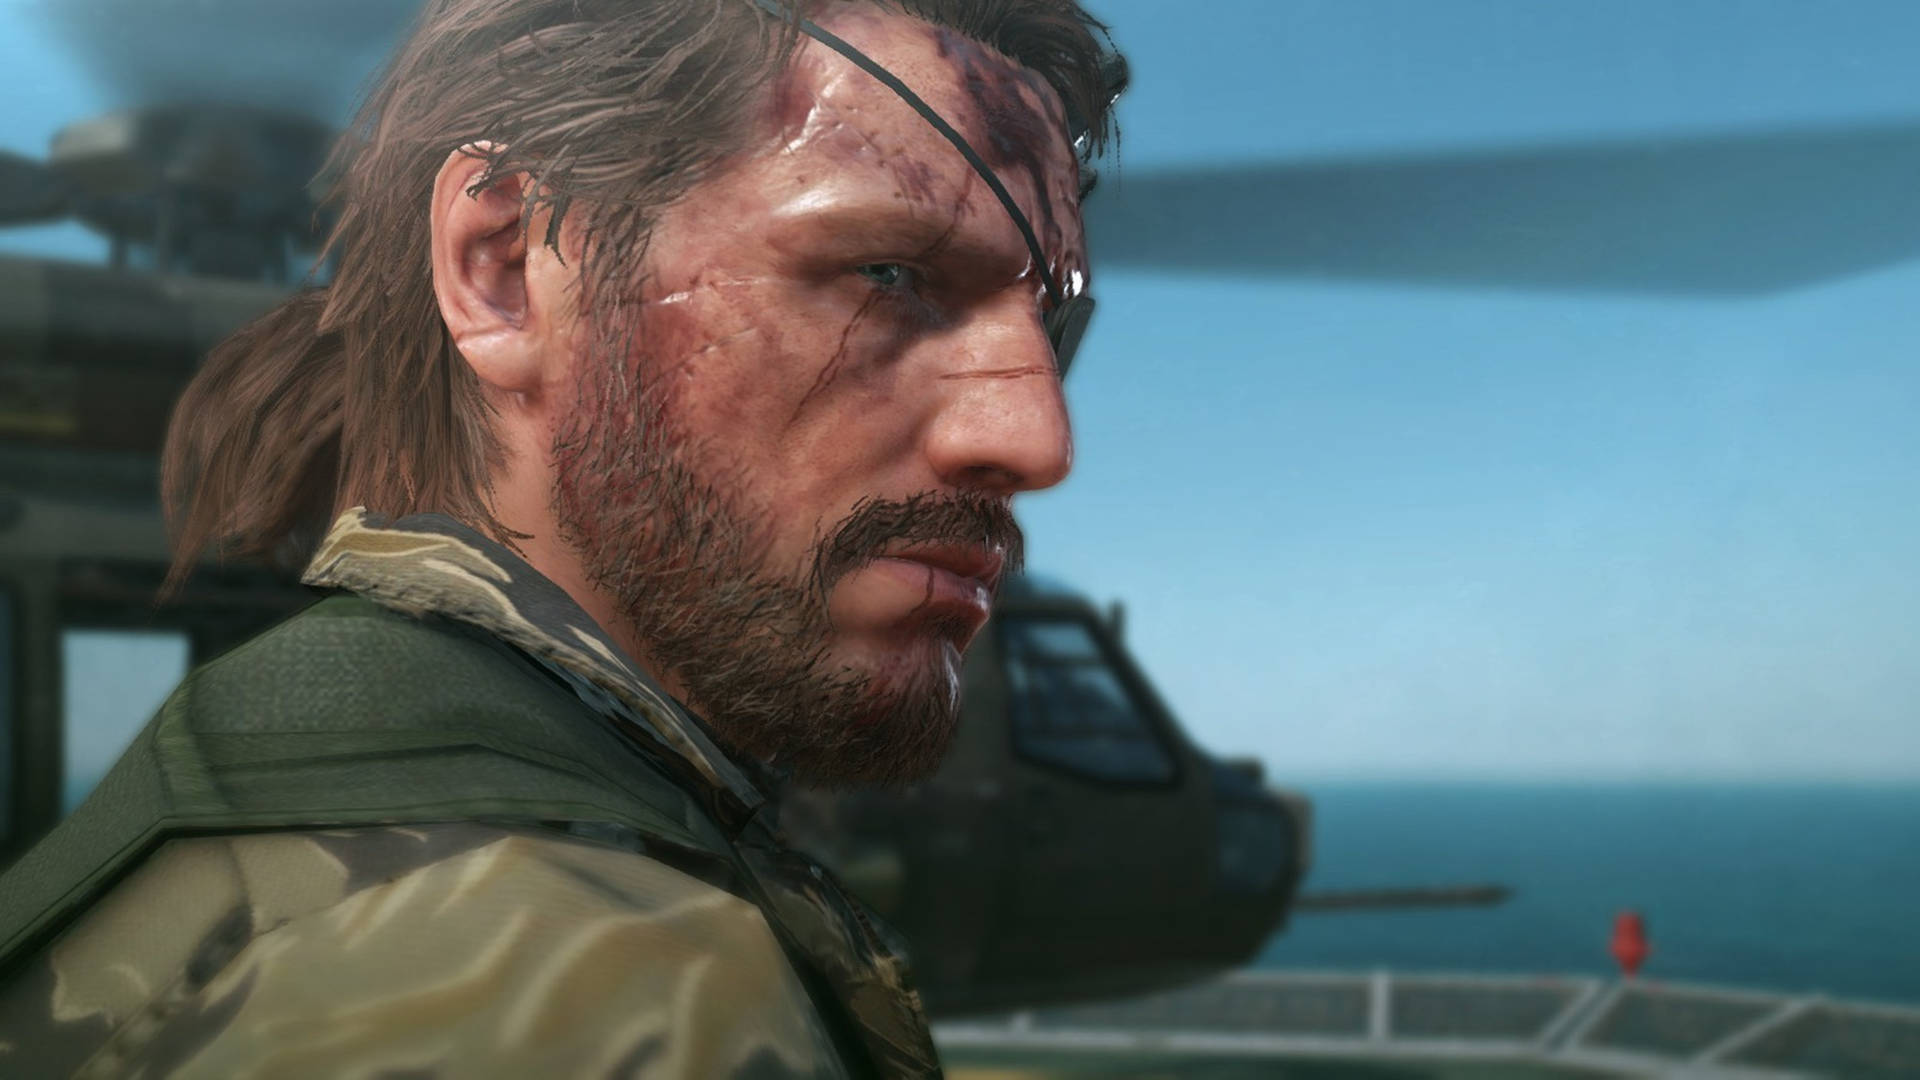 Download Big Boss Metal Gear Solid V Screenshot Wallpaper 